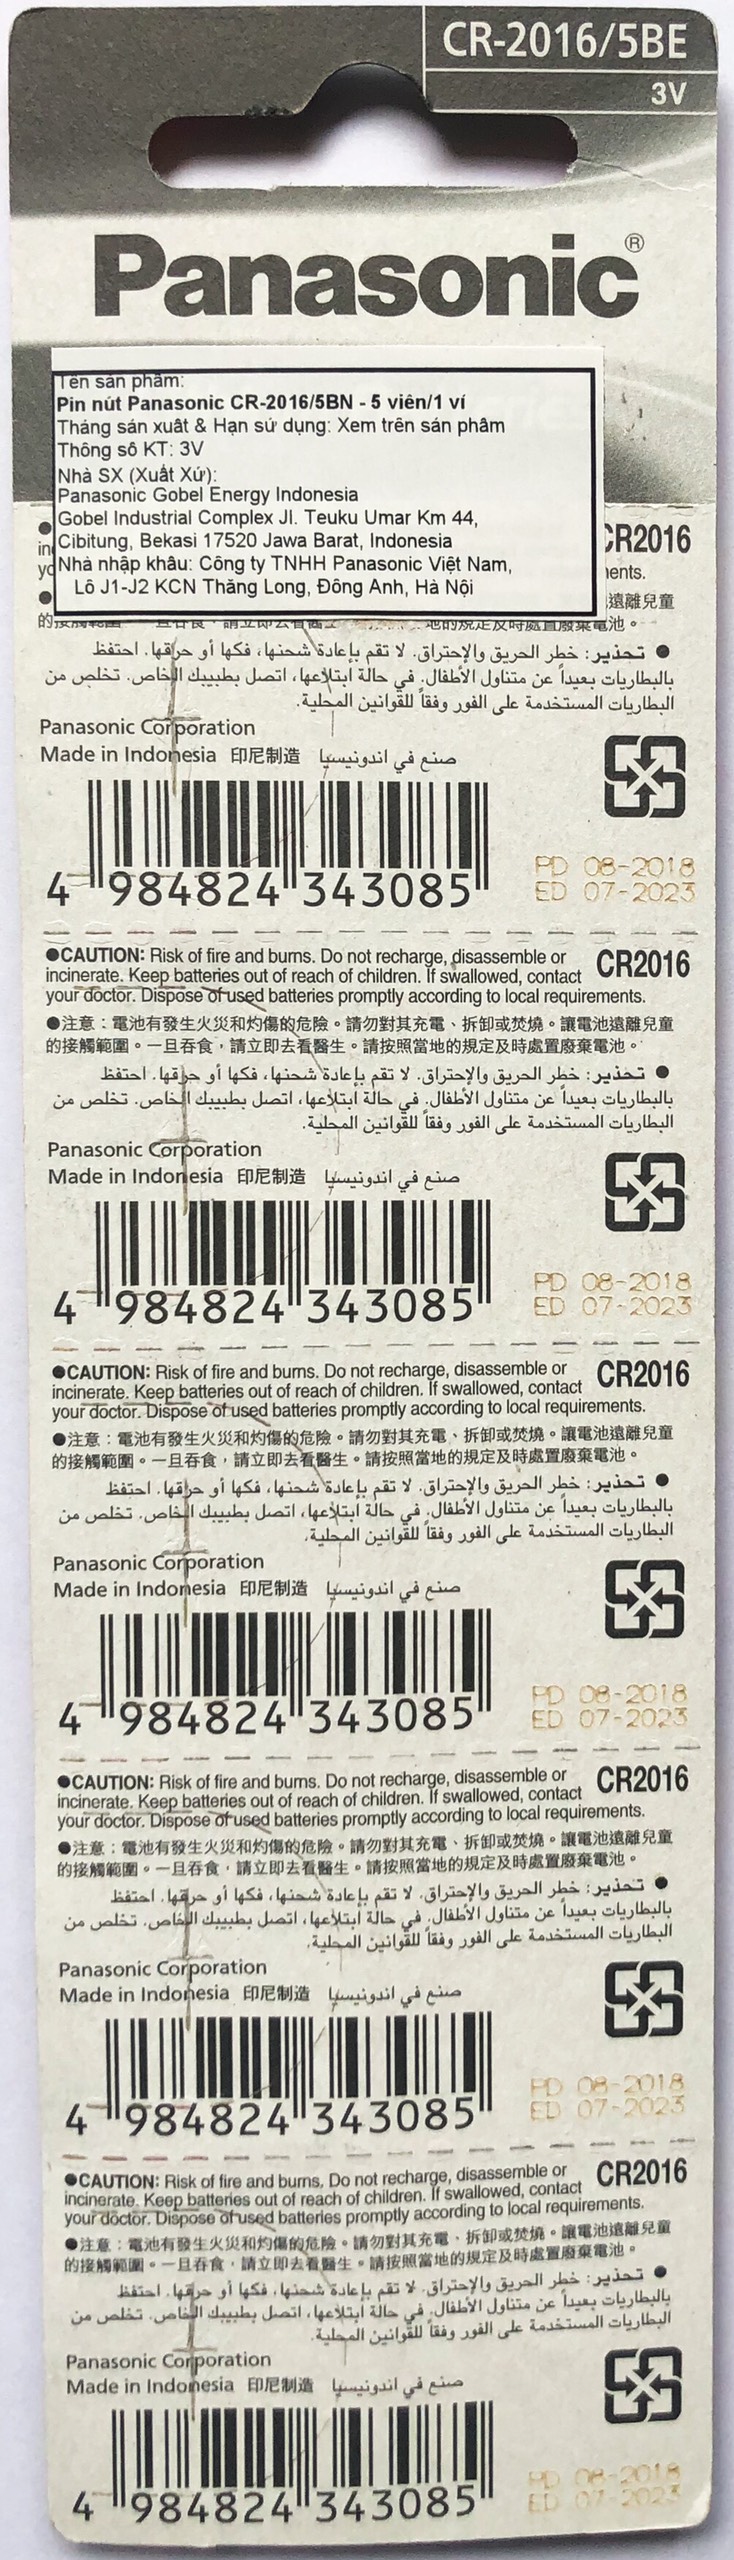 Vỉ 5 Viên Pin CR2016 ( CR 2016/5BE x 1 Vỉ ) Panasonic - Hàng Chính Hãng